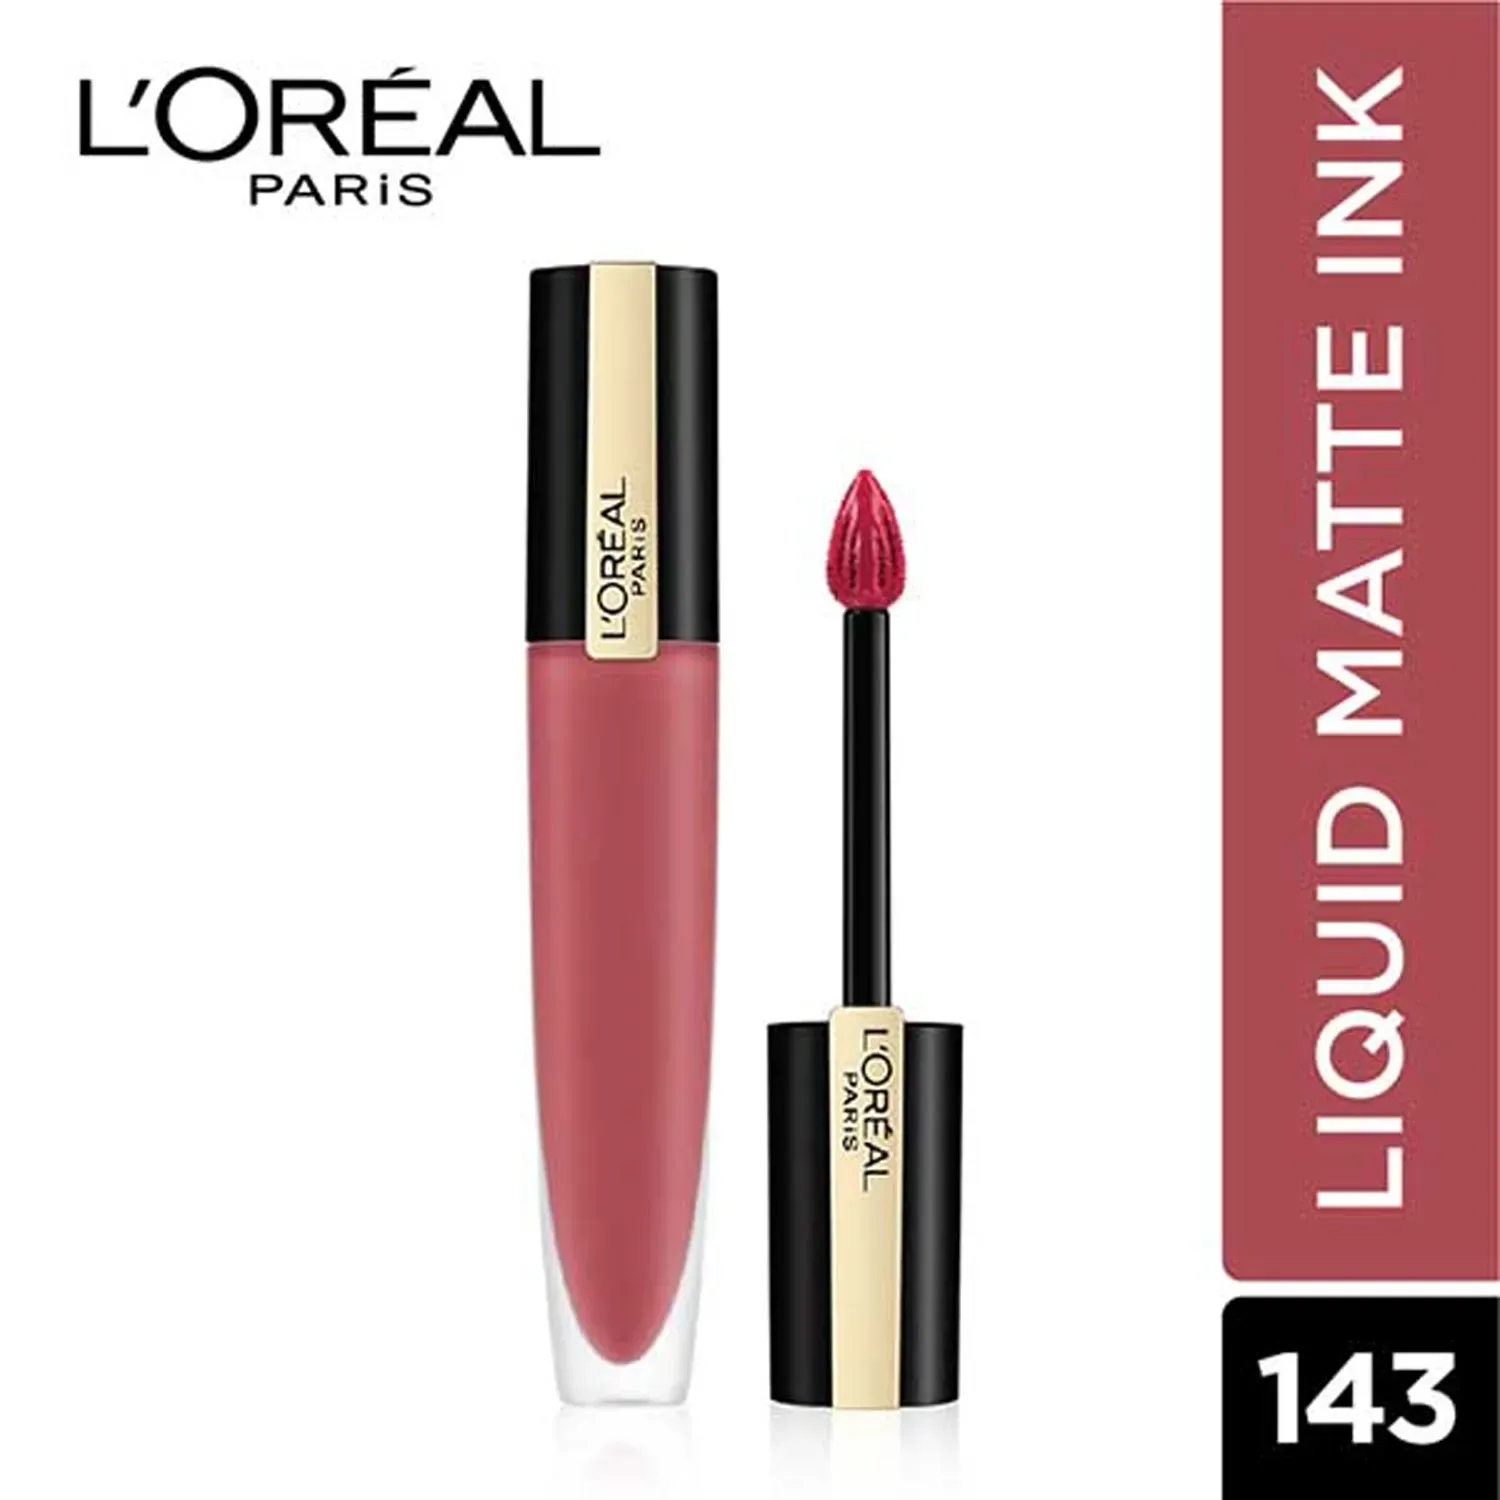 L'Oreal Paris | L'Oreal Paris Rouge Signature Matte Liquid Lipstick - 143 I Liberate (7g)